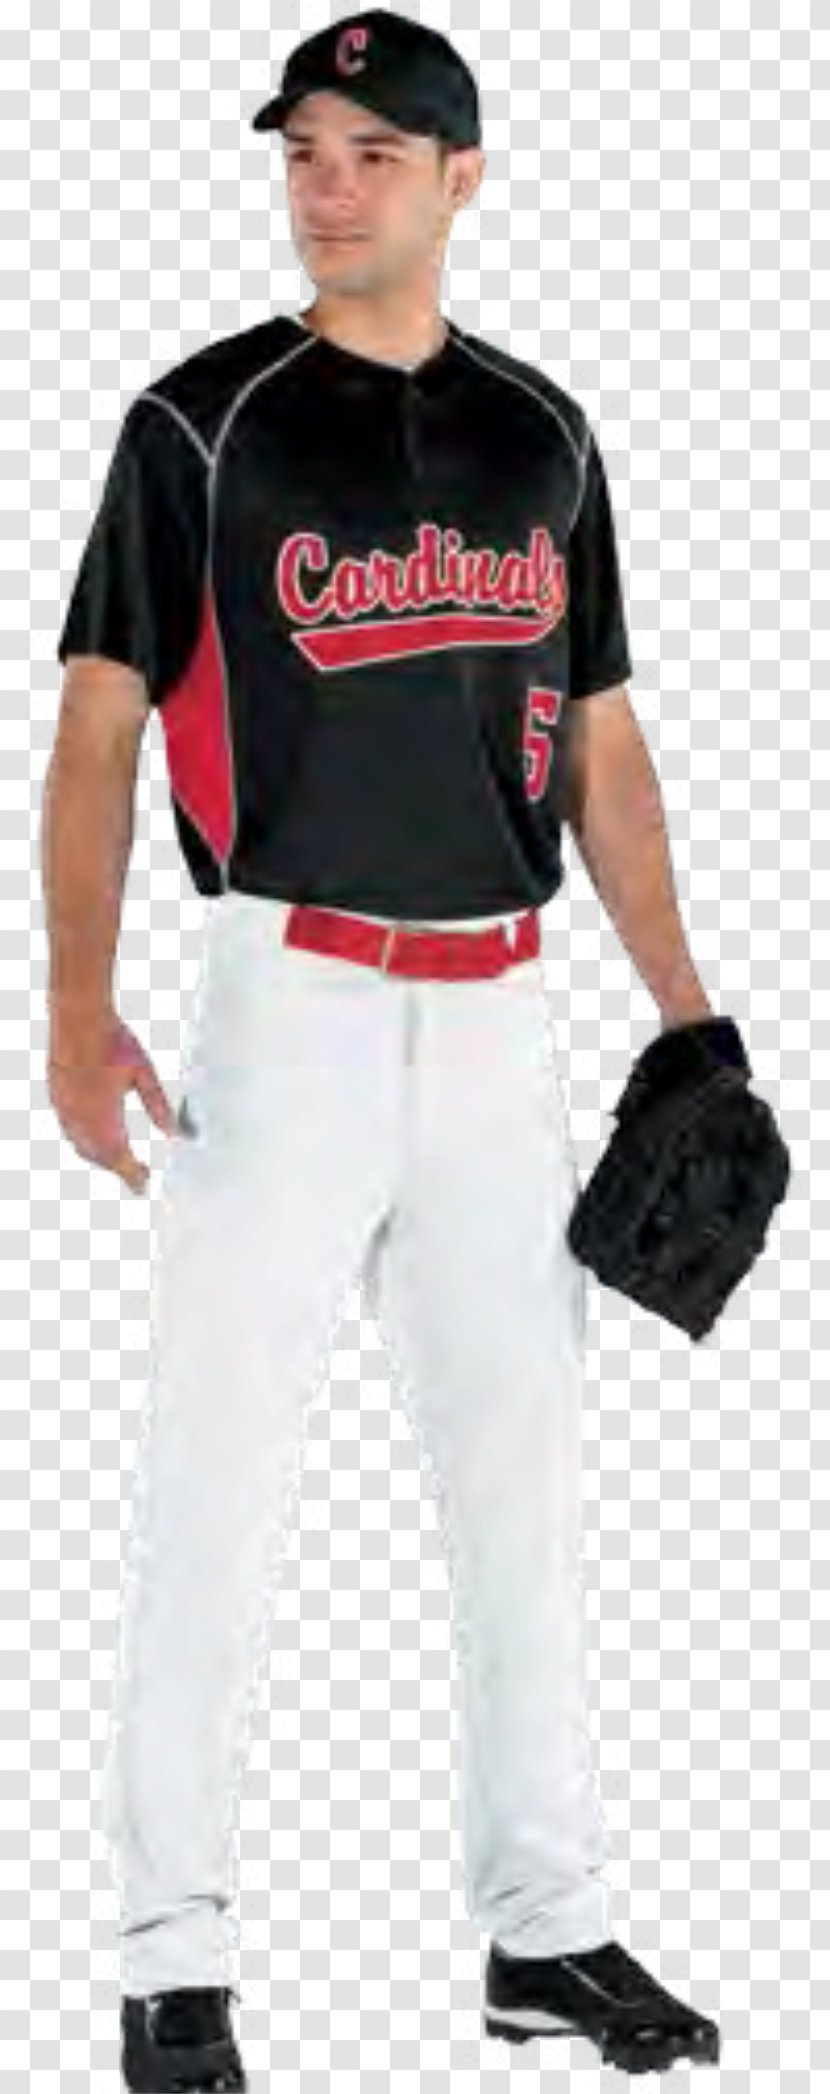 Baseball Uniform Jersey & Softball - High School Cheer Uniforms Transparent PNG